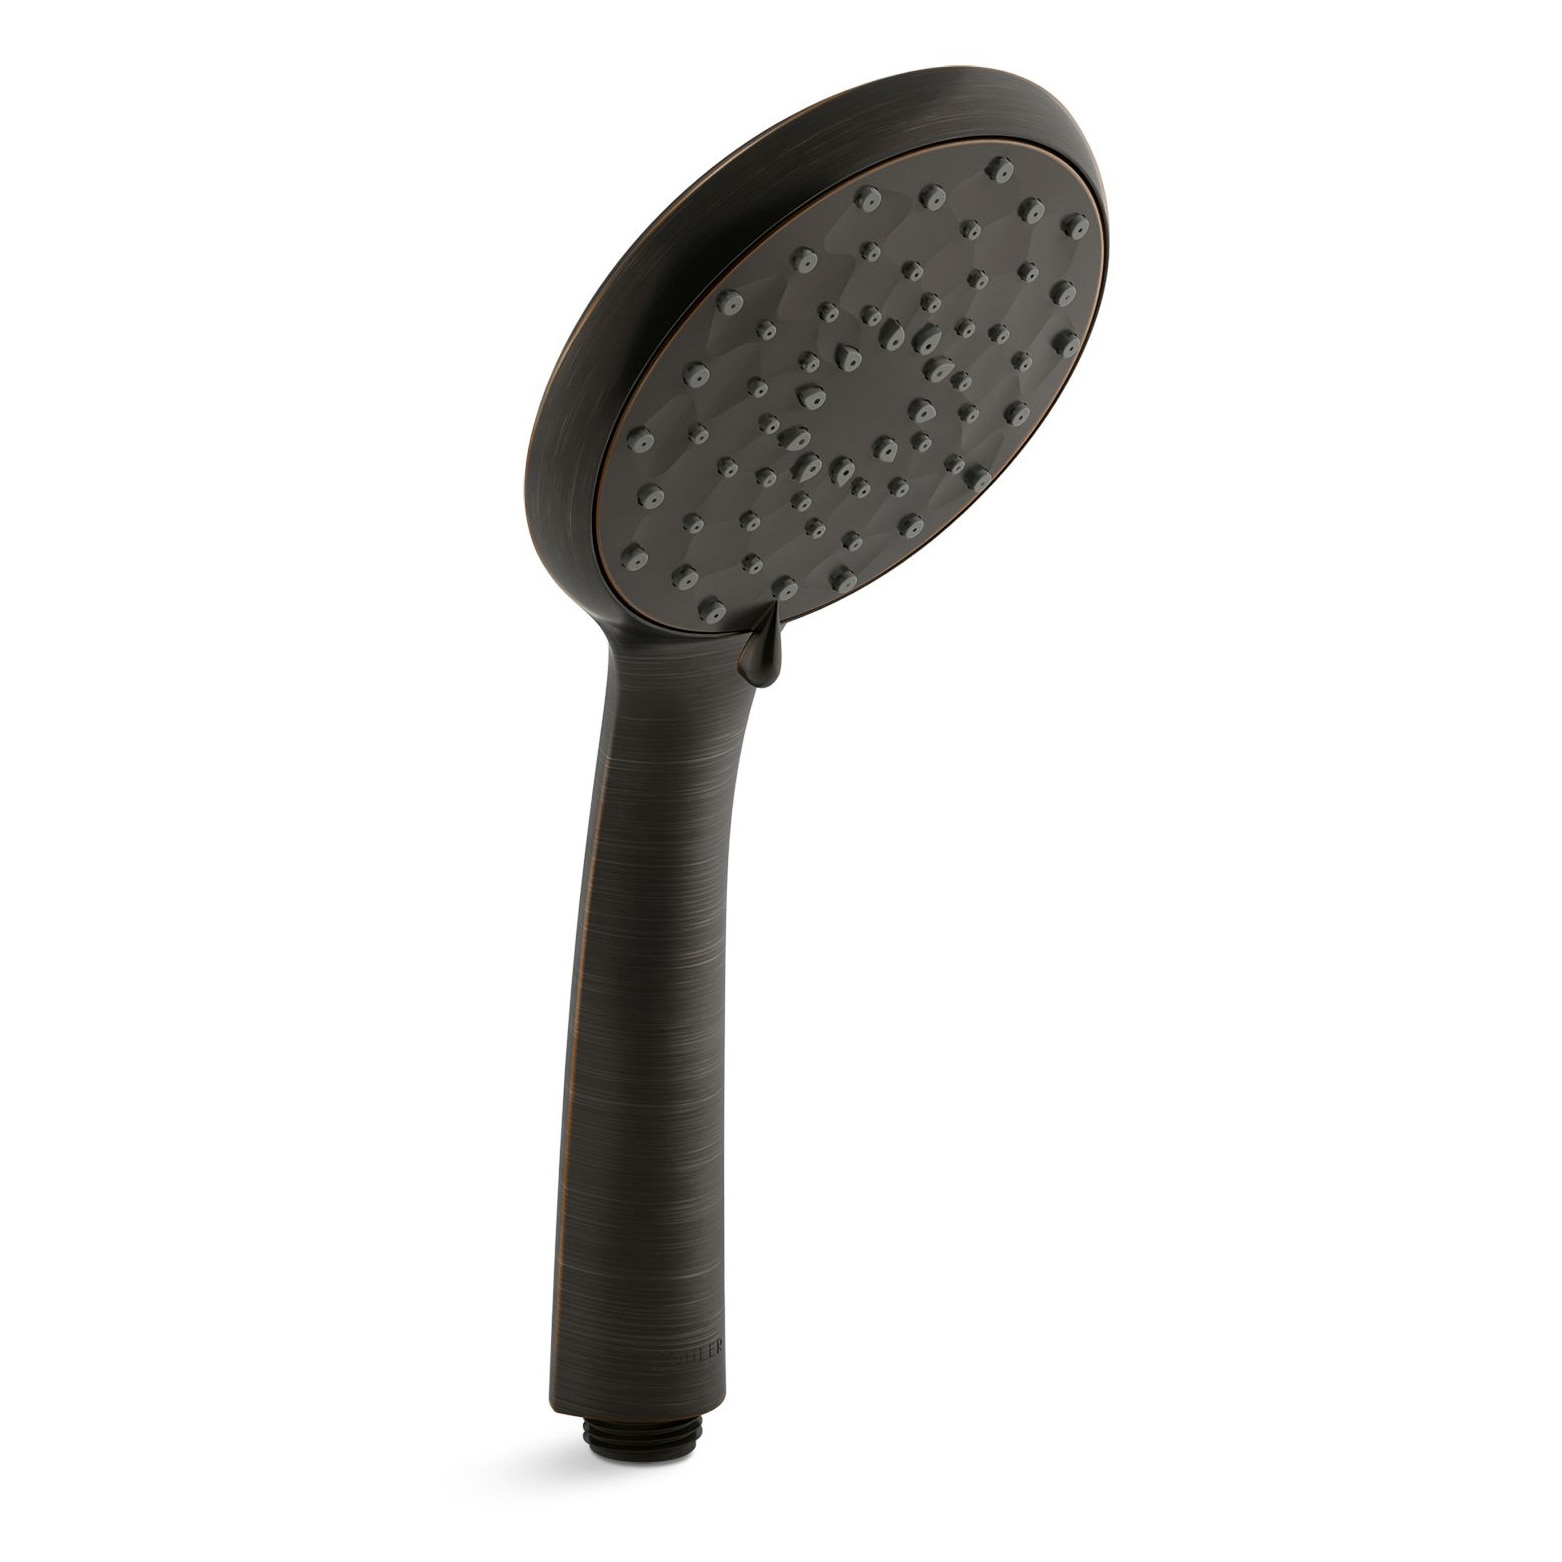 KOHLER Awaken Oil-Rubbed Bronze Handheld Shower Head 2-GPM (7.6-LPM)